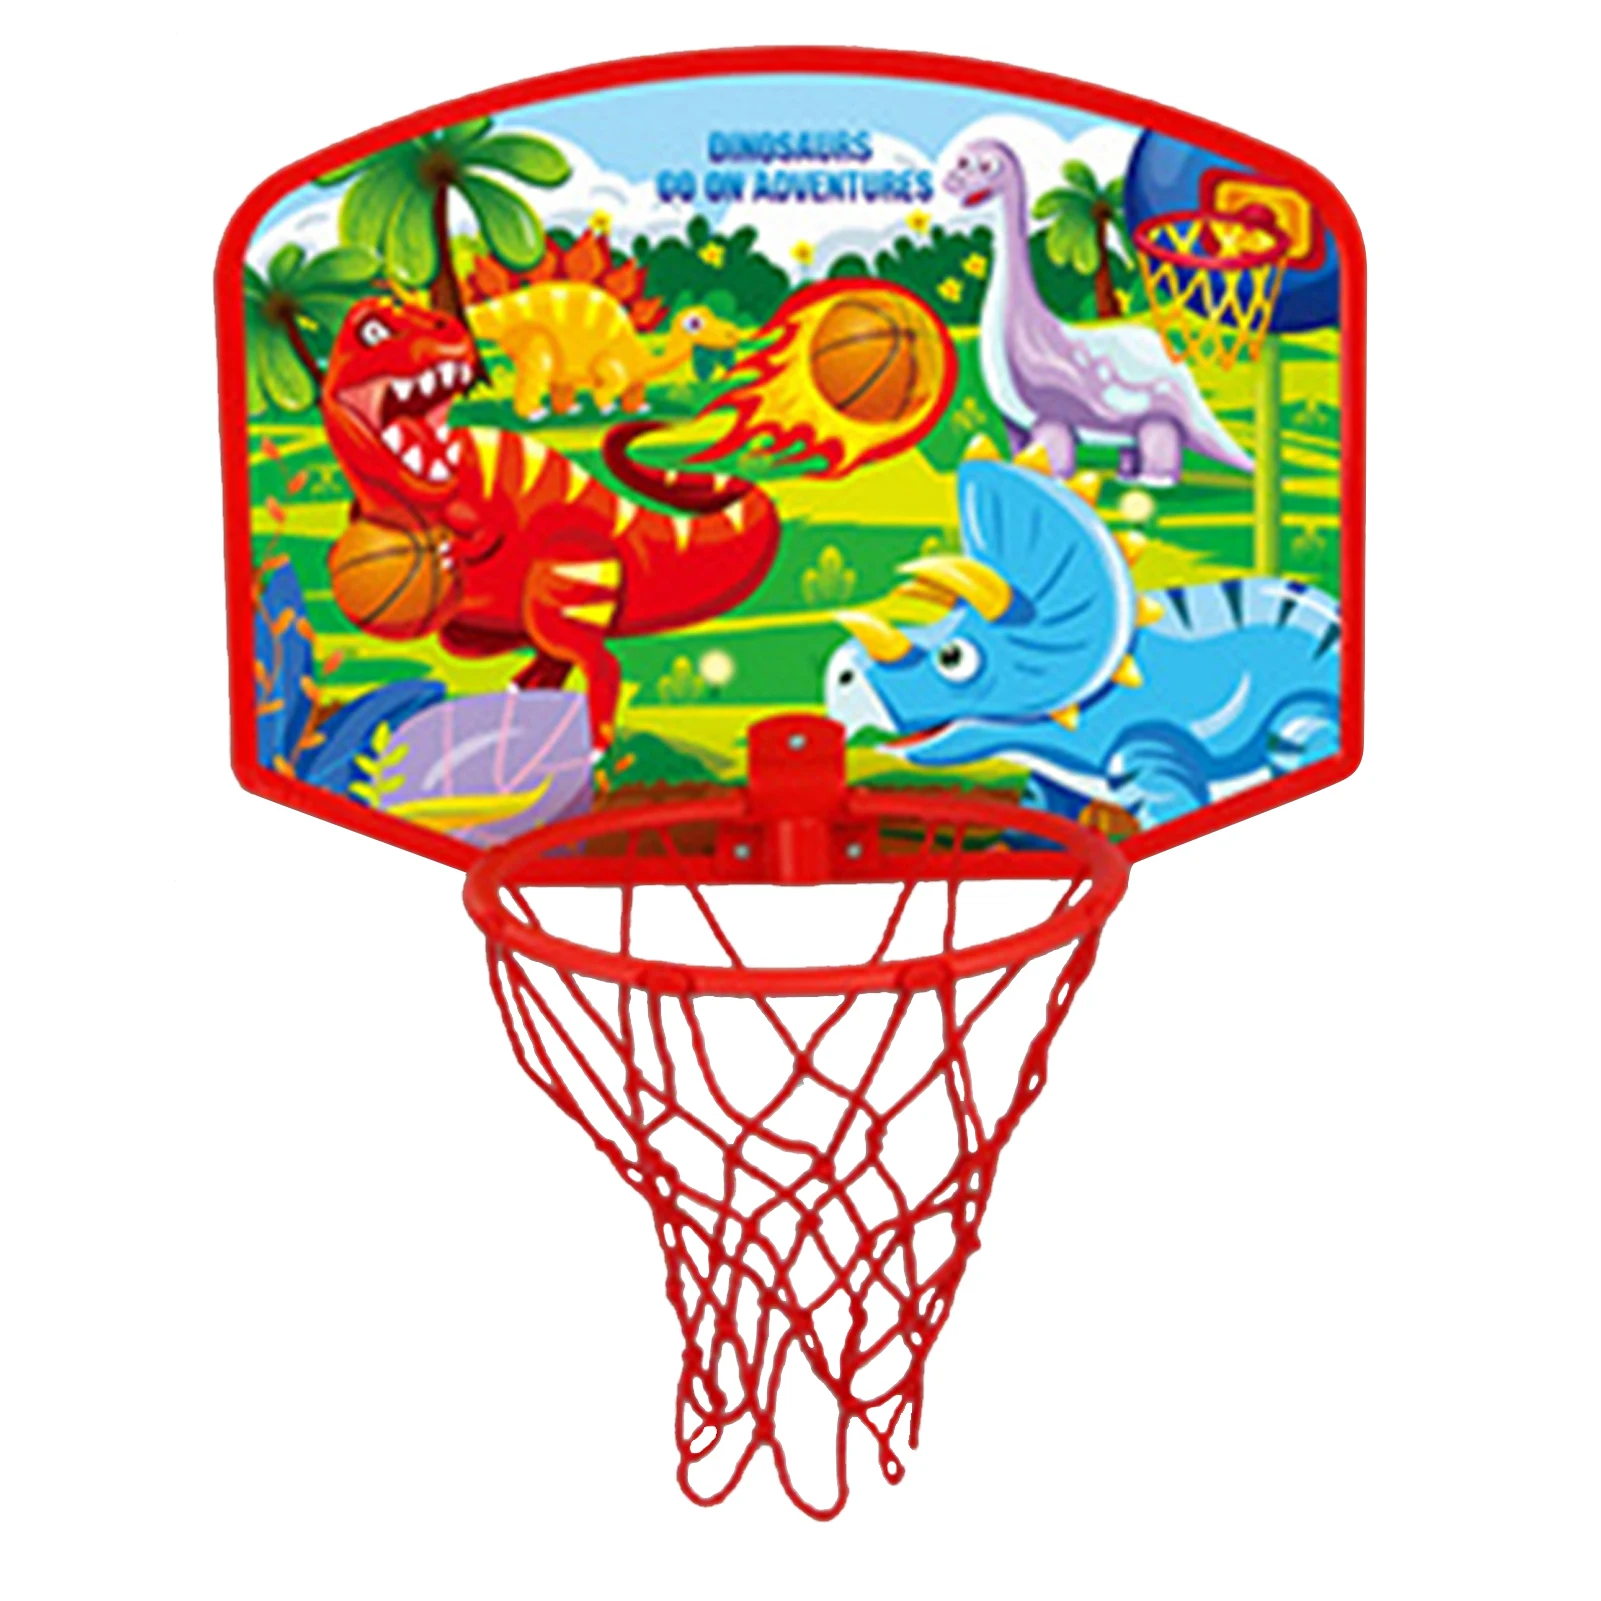 

Пластиковая баскетбольная доска, обруч, мини-сетевая доска, набор сетки, детские игрушки для уличных упражнений, спортивное оборудование